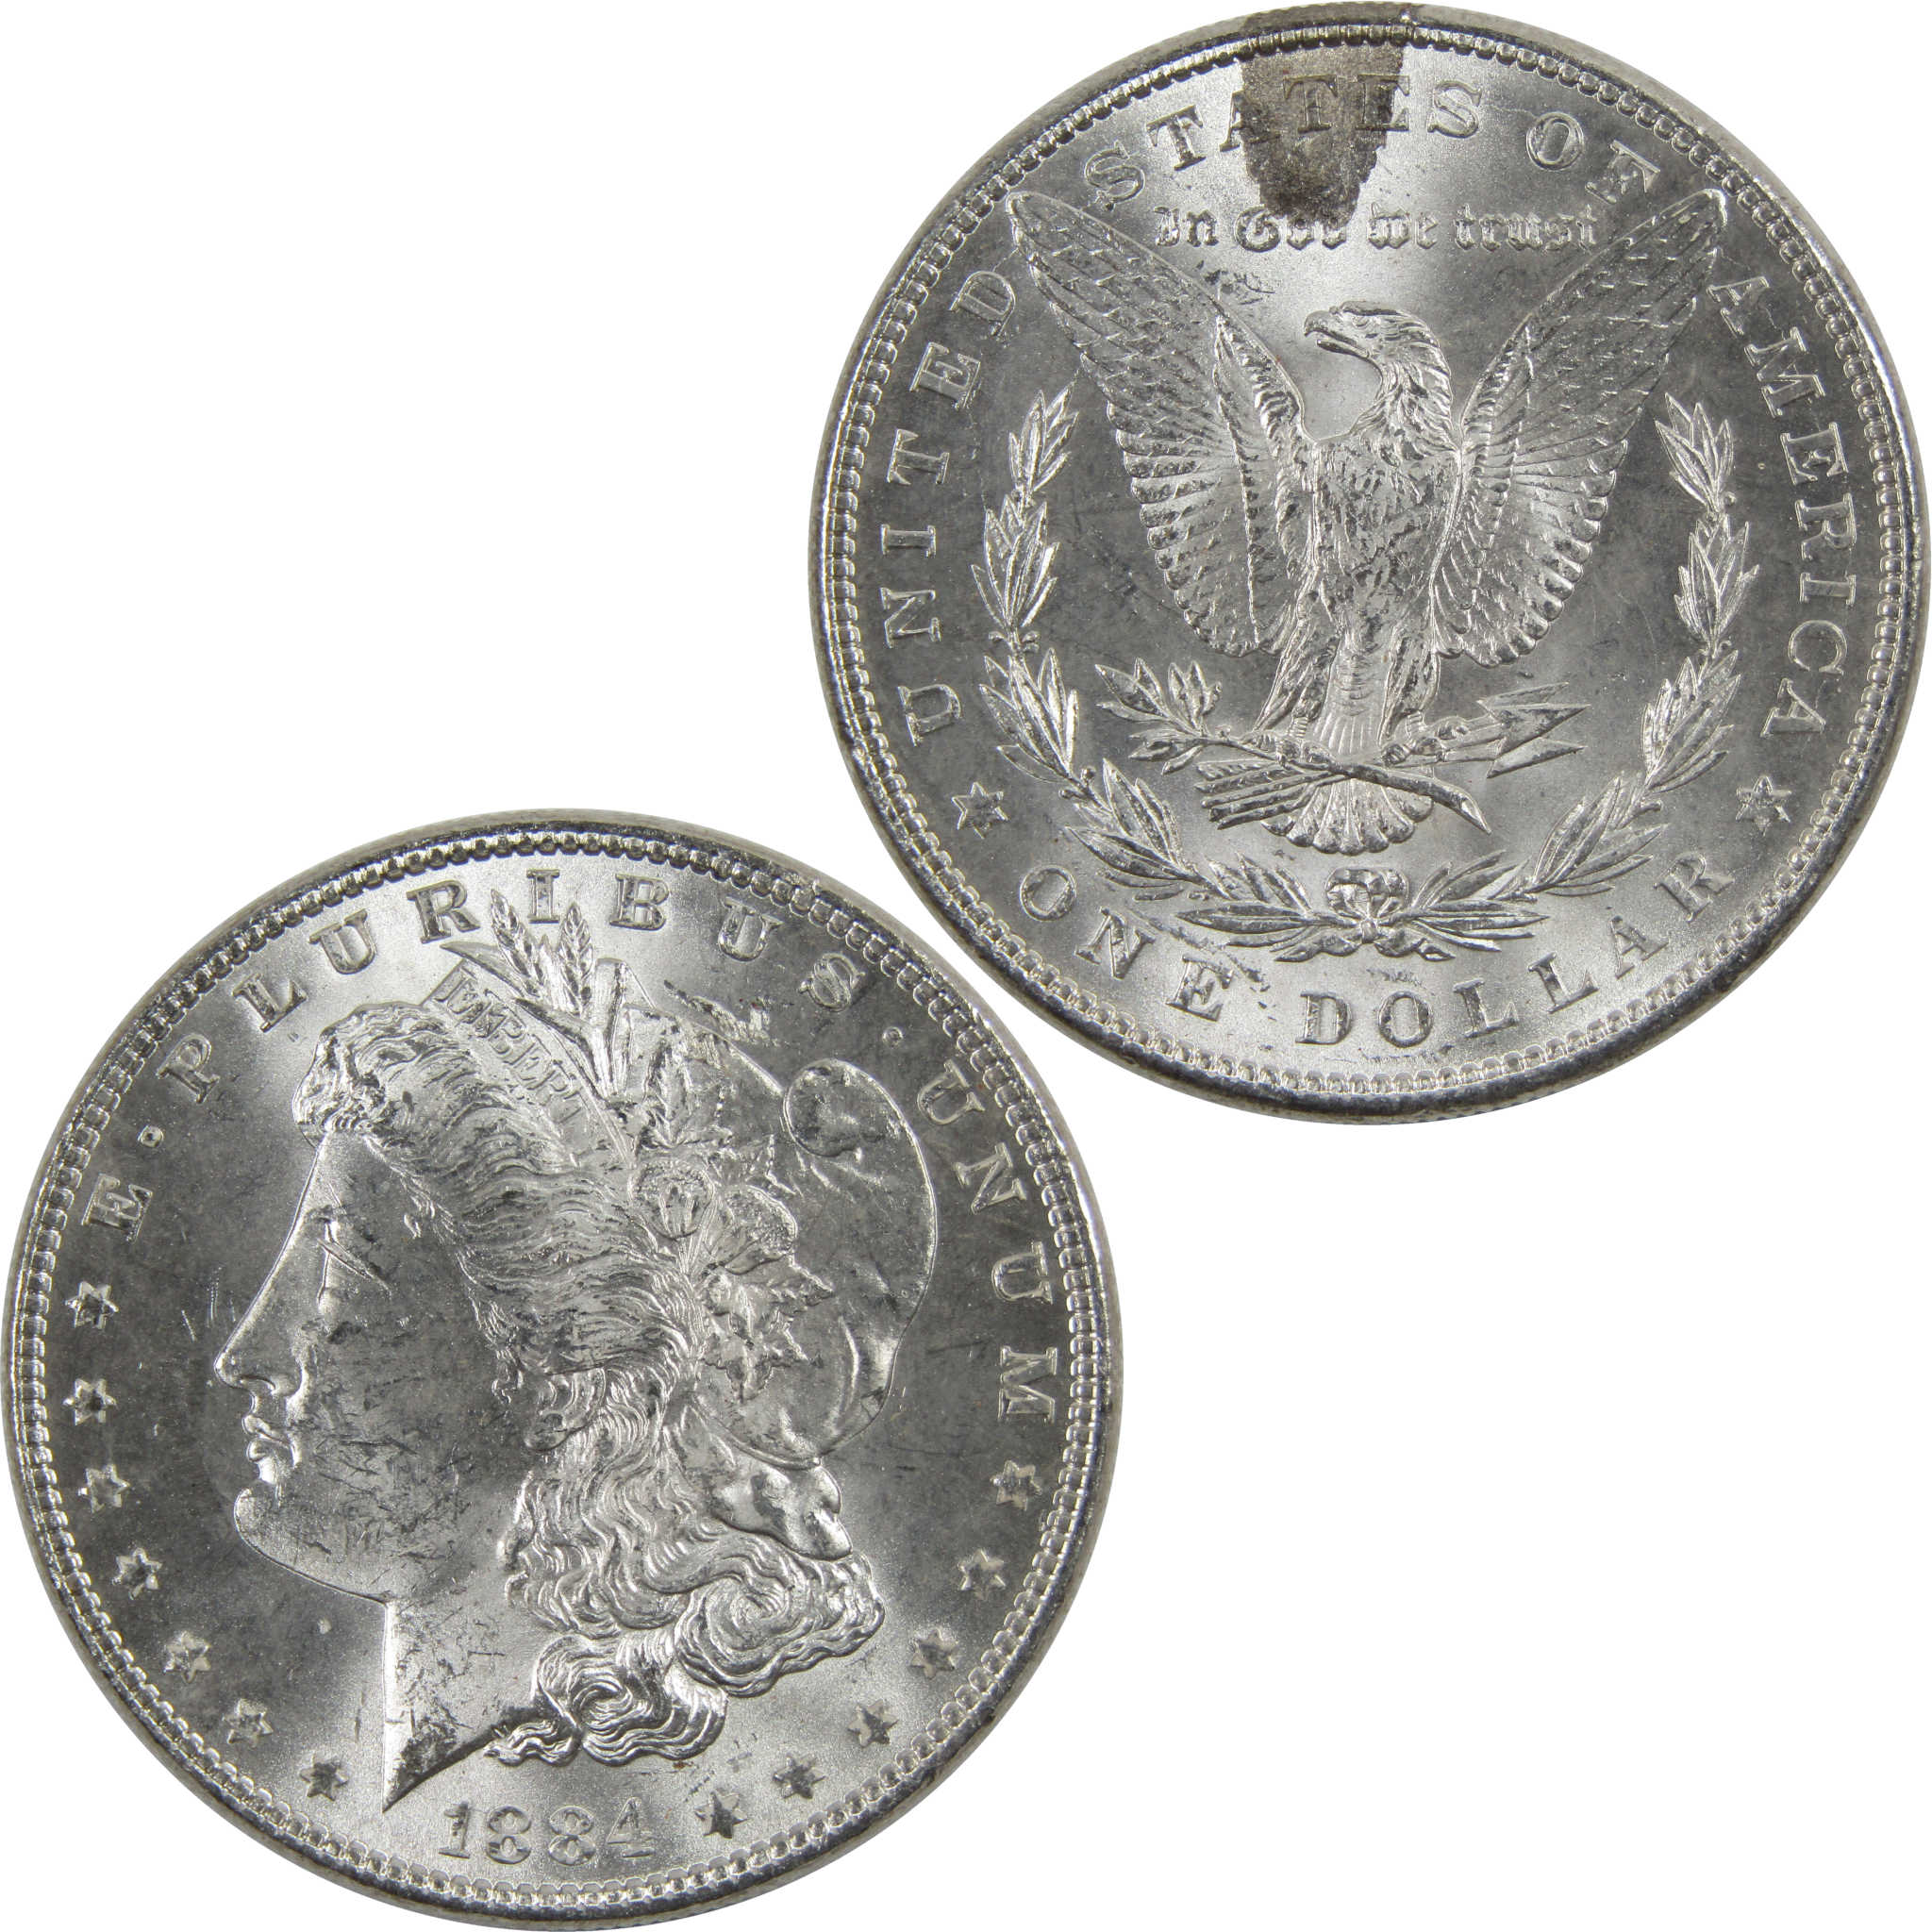 1884 Morgan Dollar BU Uncirculated 90% Silver $1 Coin SKU:I6018 - Morgan coin - Morgan silver dollar - Morgan silver dollar for sale - Profile Coins &amp; Collectibles